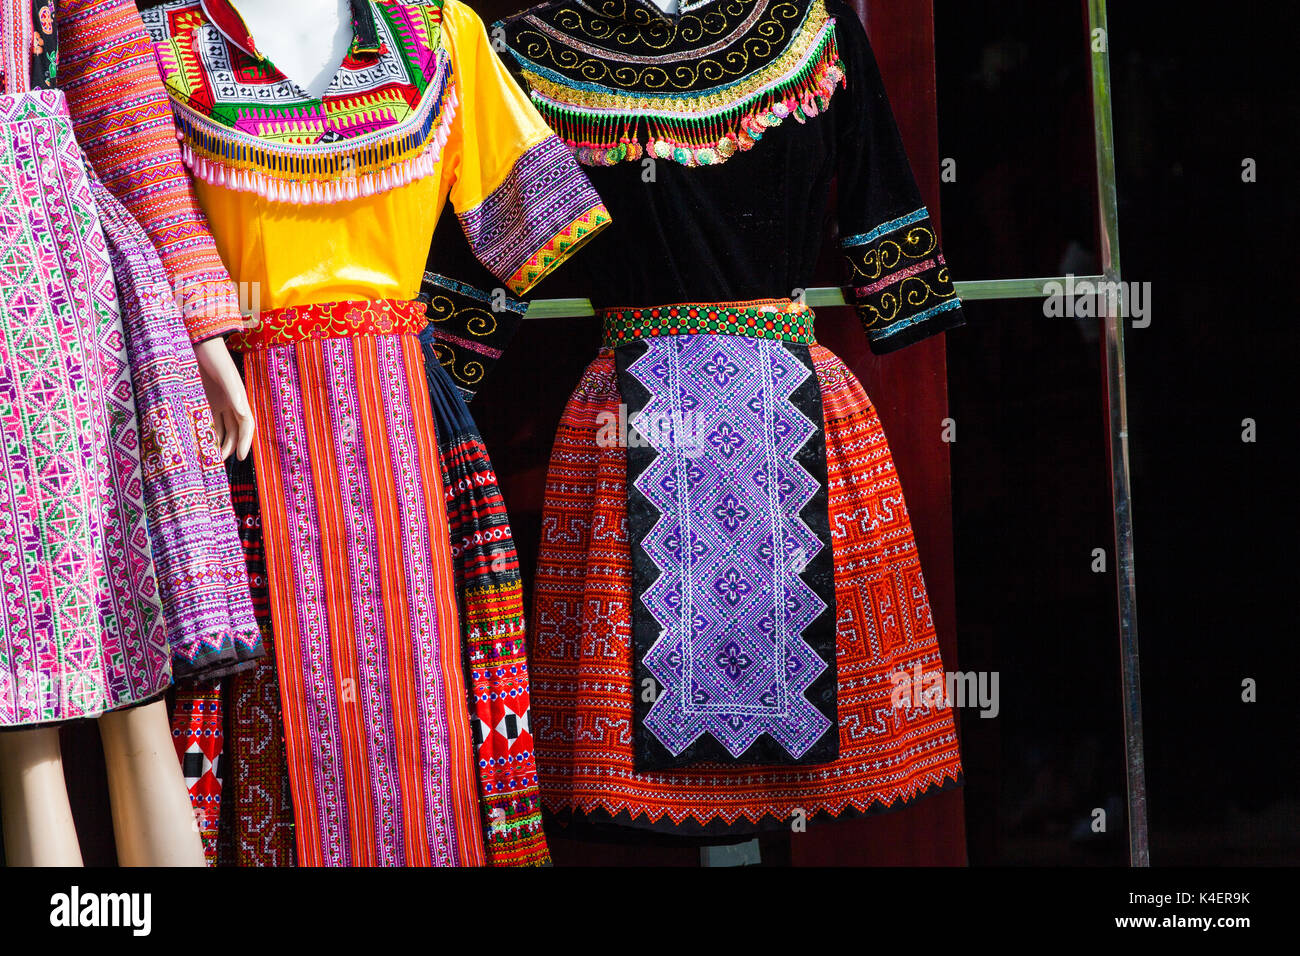 Salida Bloquear preferible Ropa artesanal con patrones étnicos hmong. hmong son un grupo étnico de las  regiones montañosas de China, Vietnam y Tailandia Fotografía de stock -  Alamy